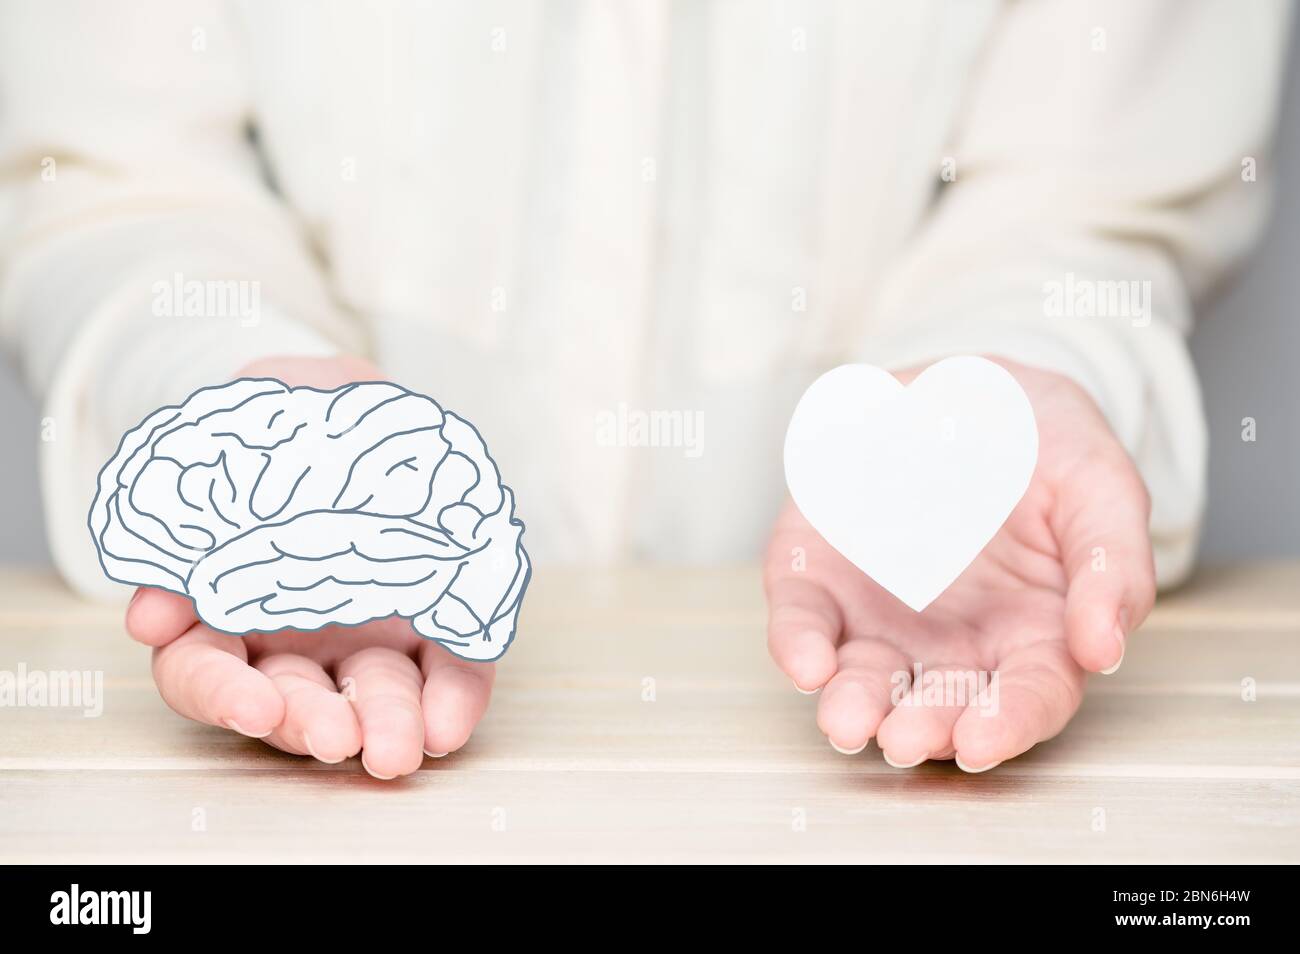 Weibliche Hände halten Papier schneiden Gehirn und Seele. Konflikt zwischen Emotionen und rationalem Denken. Gleichgewicht und Gleichgewicht zwischen Geist und Herz Konzept Stockfoto